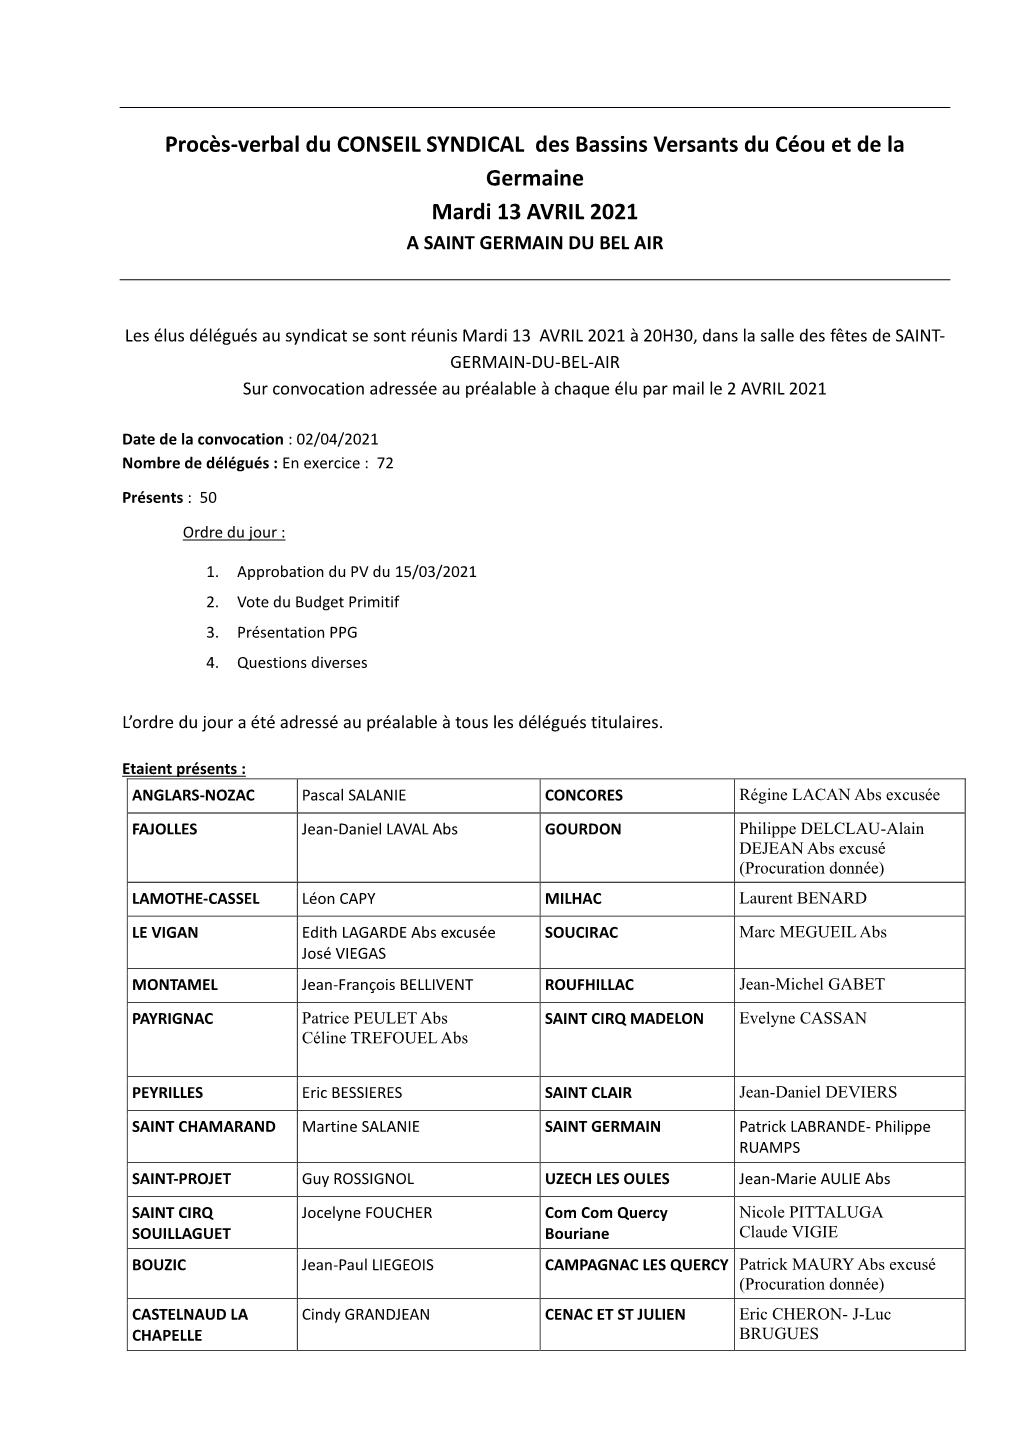 Procès-Verbal Du CONSEIL SYNDICAL Des Bassins Versants Du Céou Et De La Germaine Mardi 13 AVRIL 2021 a SAINT GERMAIN DU BEL AIR